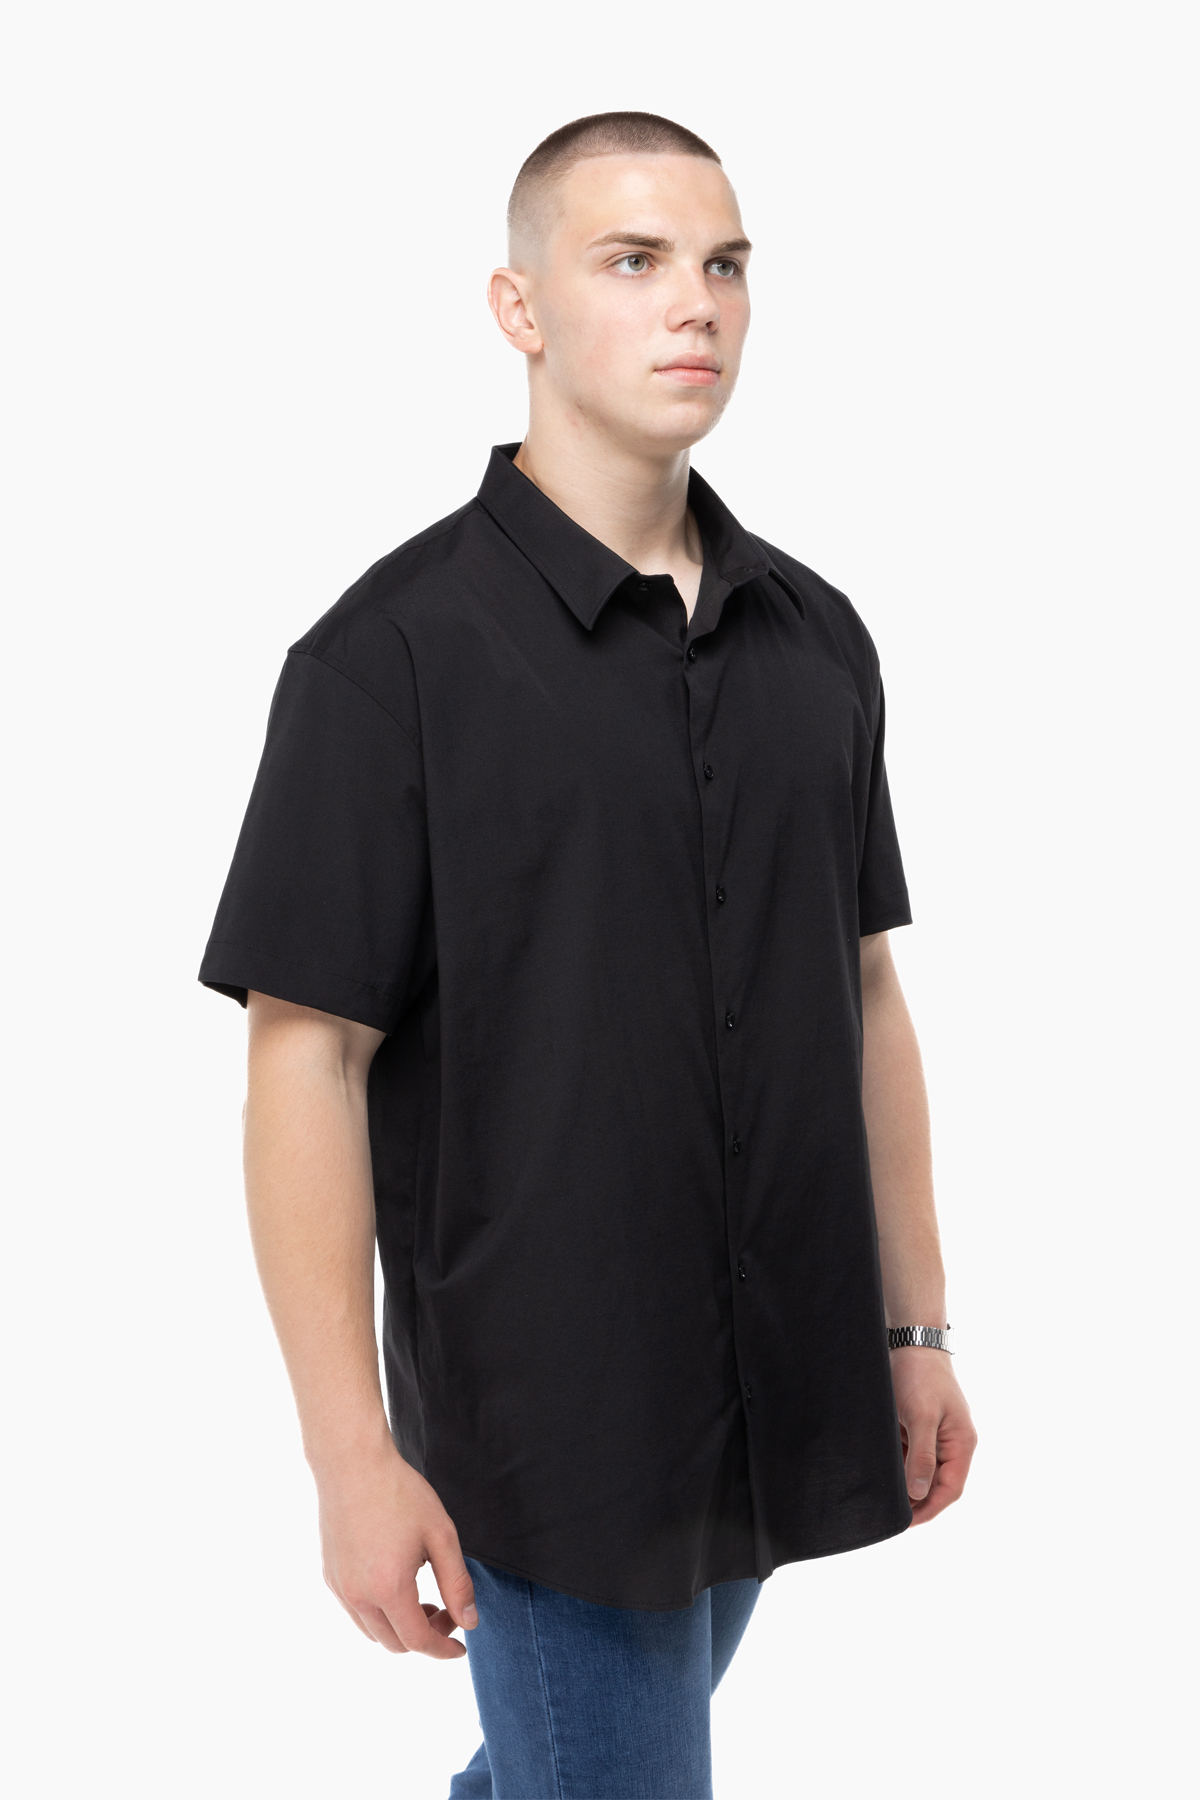 Рубашка классическая однотонная мужская Redpolo 3785 6XL Черный (2000989848080)